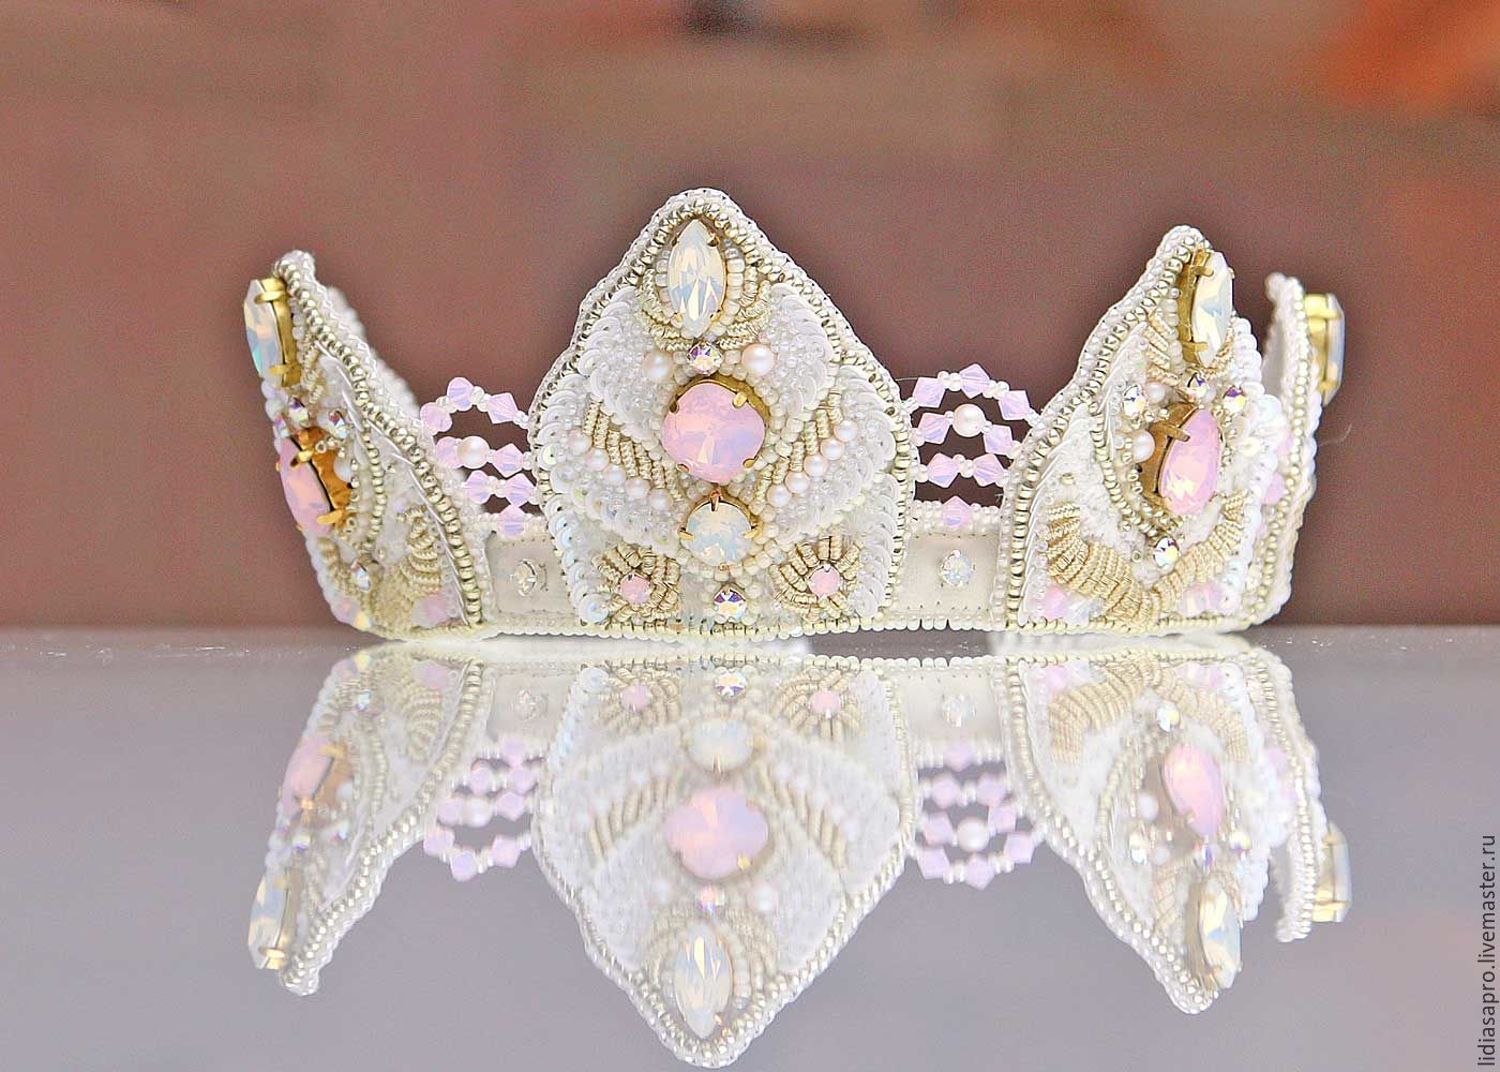 Photo №4 к отзыву покупателя ˙˙·٠•✿ Irina ✿•٠·˙˙Irena Israel о товаре Свадебная корона для прически and 2 more items